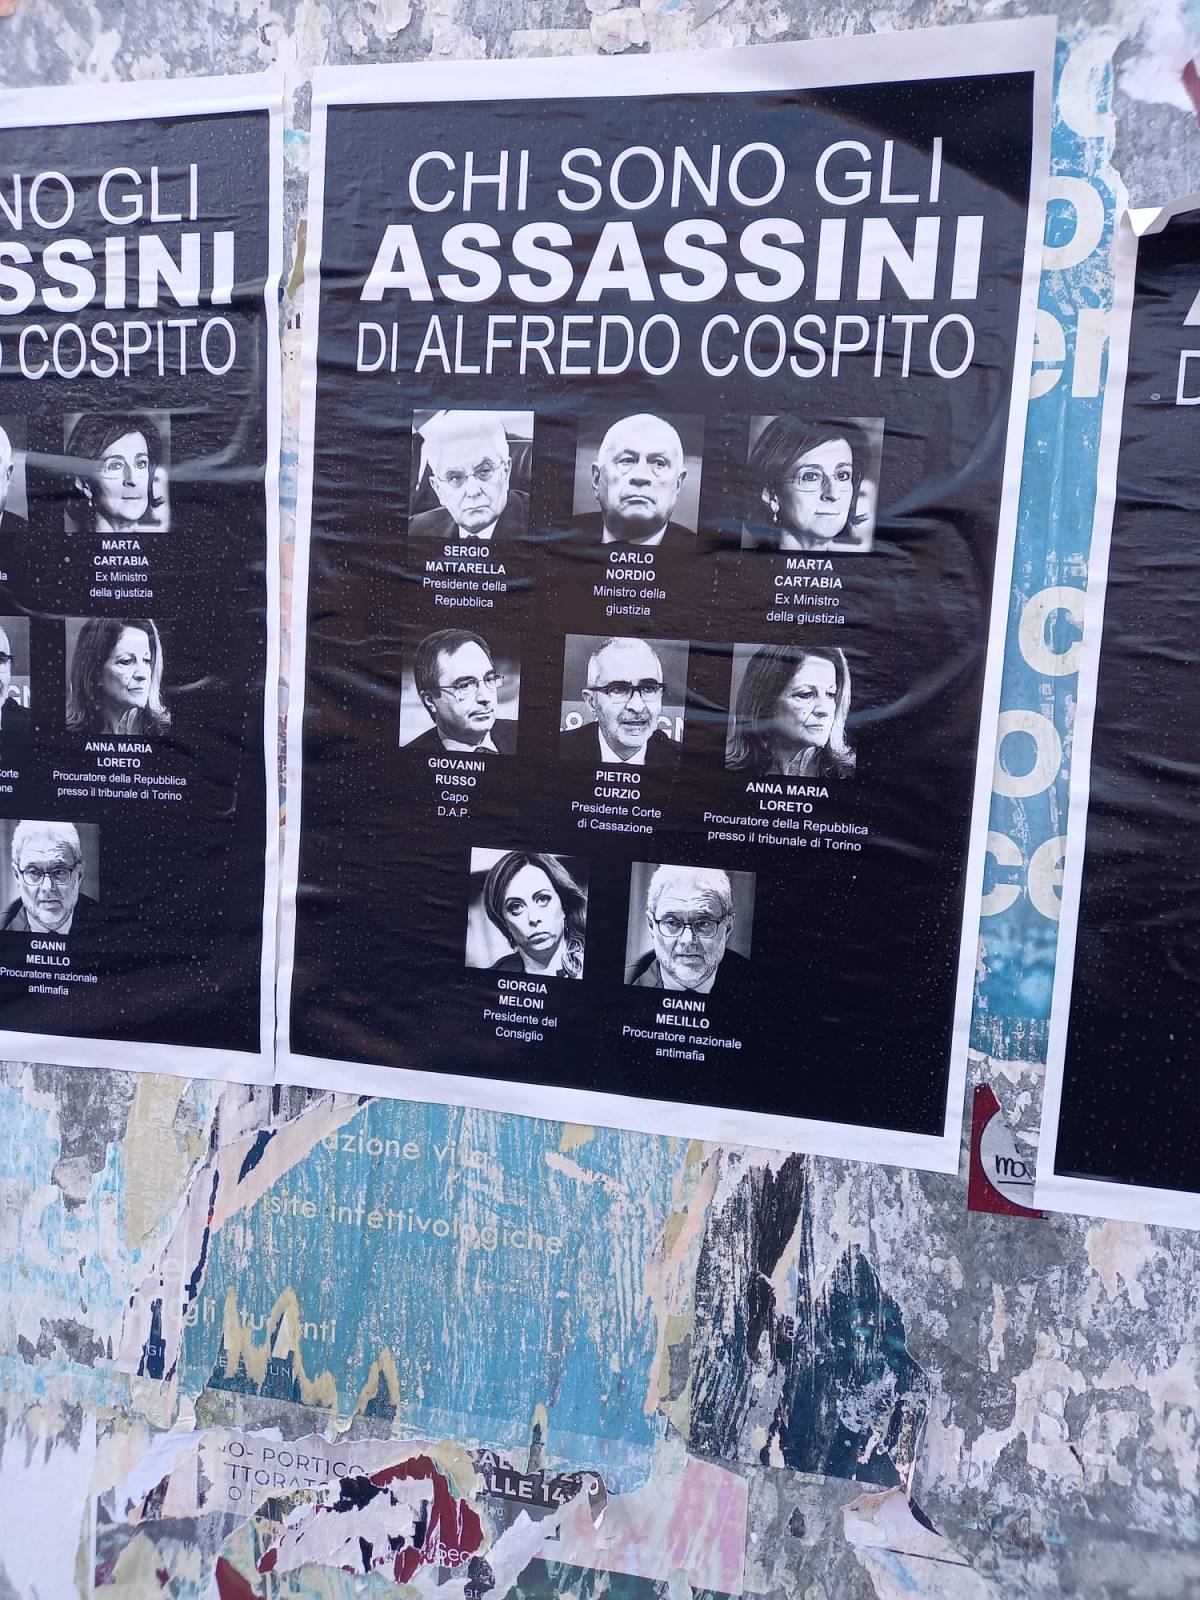 "Chi sono gli assassini di Cospito". Manifesto choc degli anarchici alla Sapienza